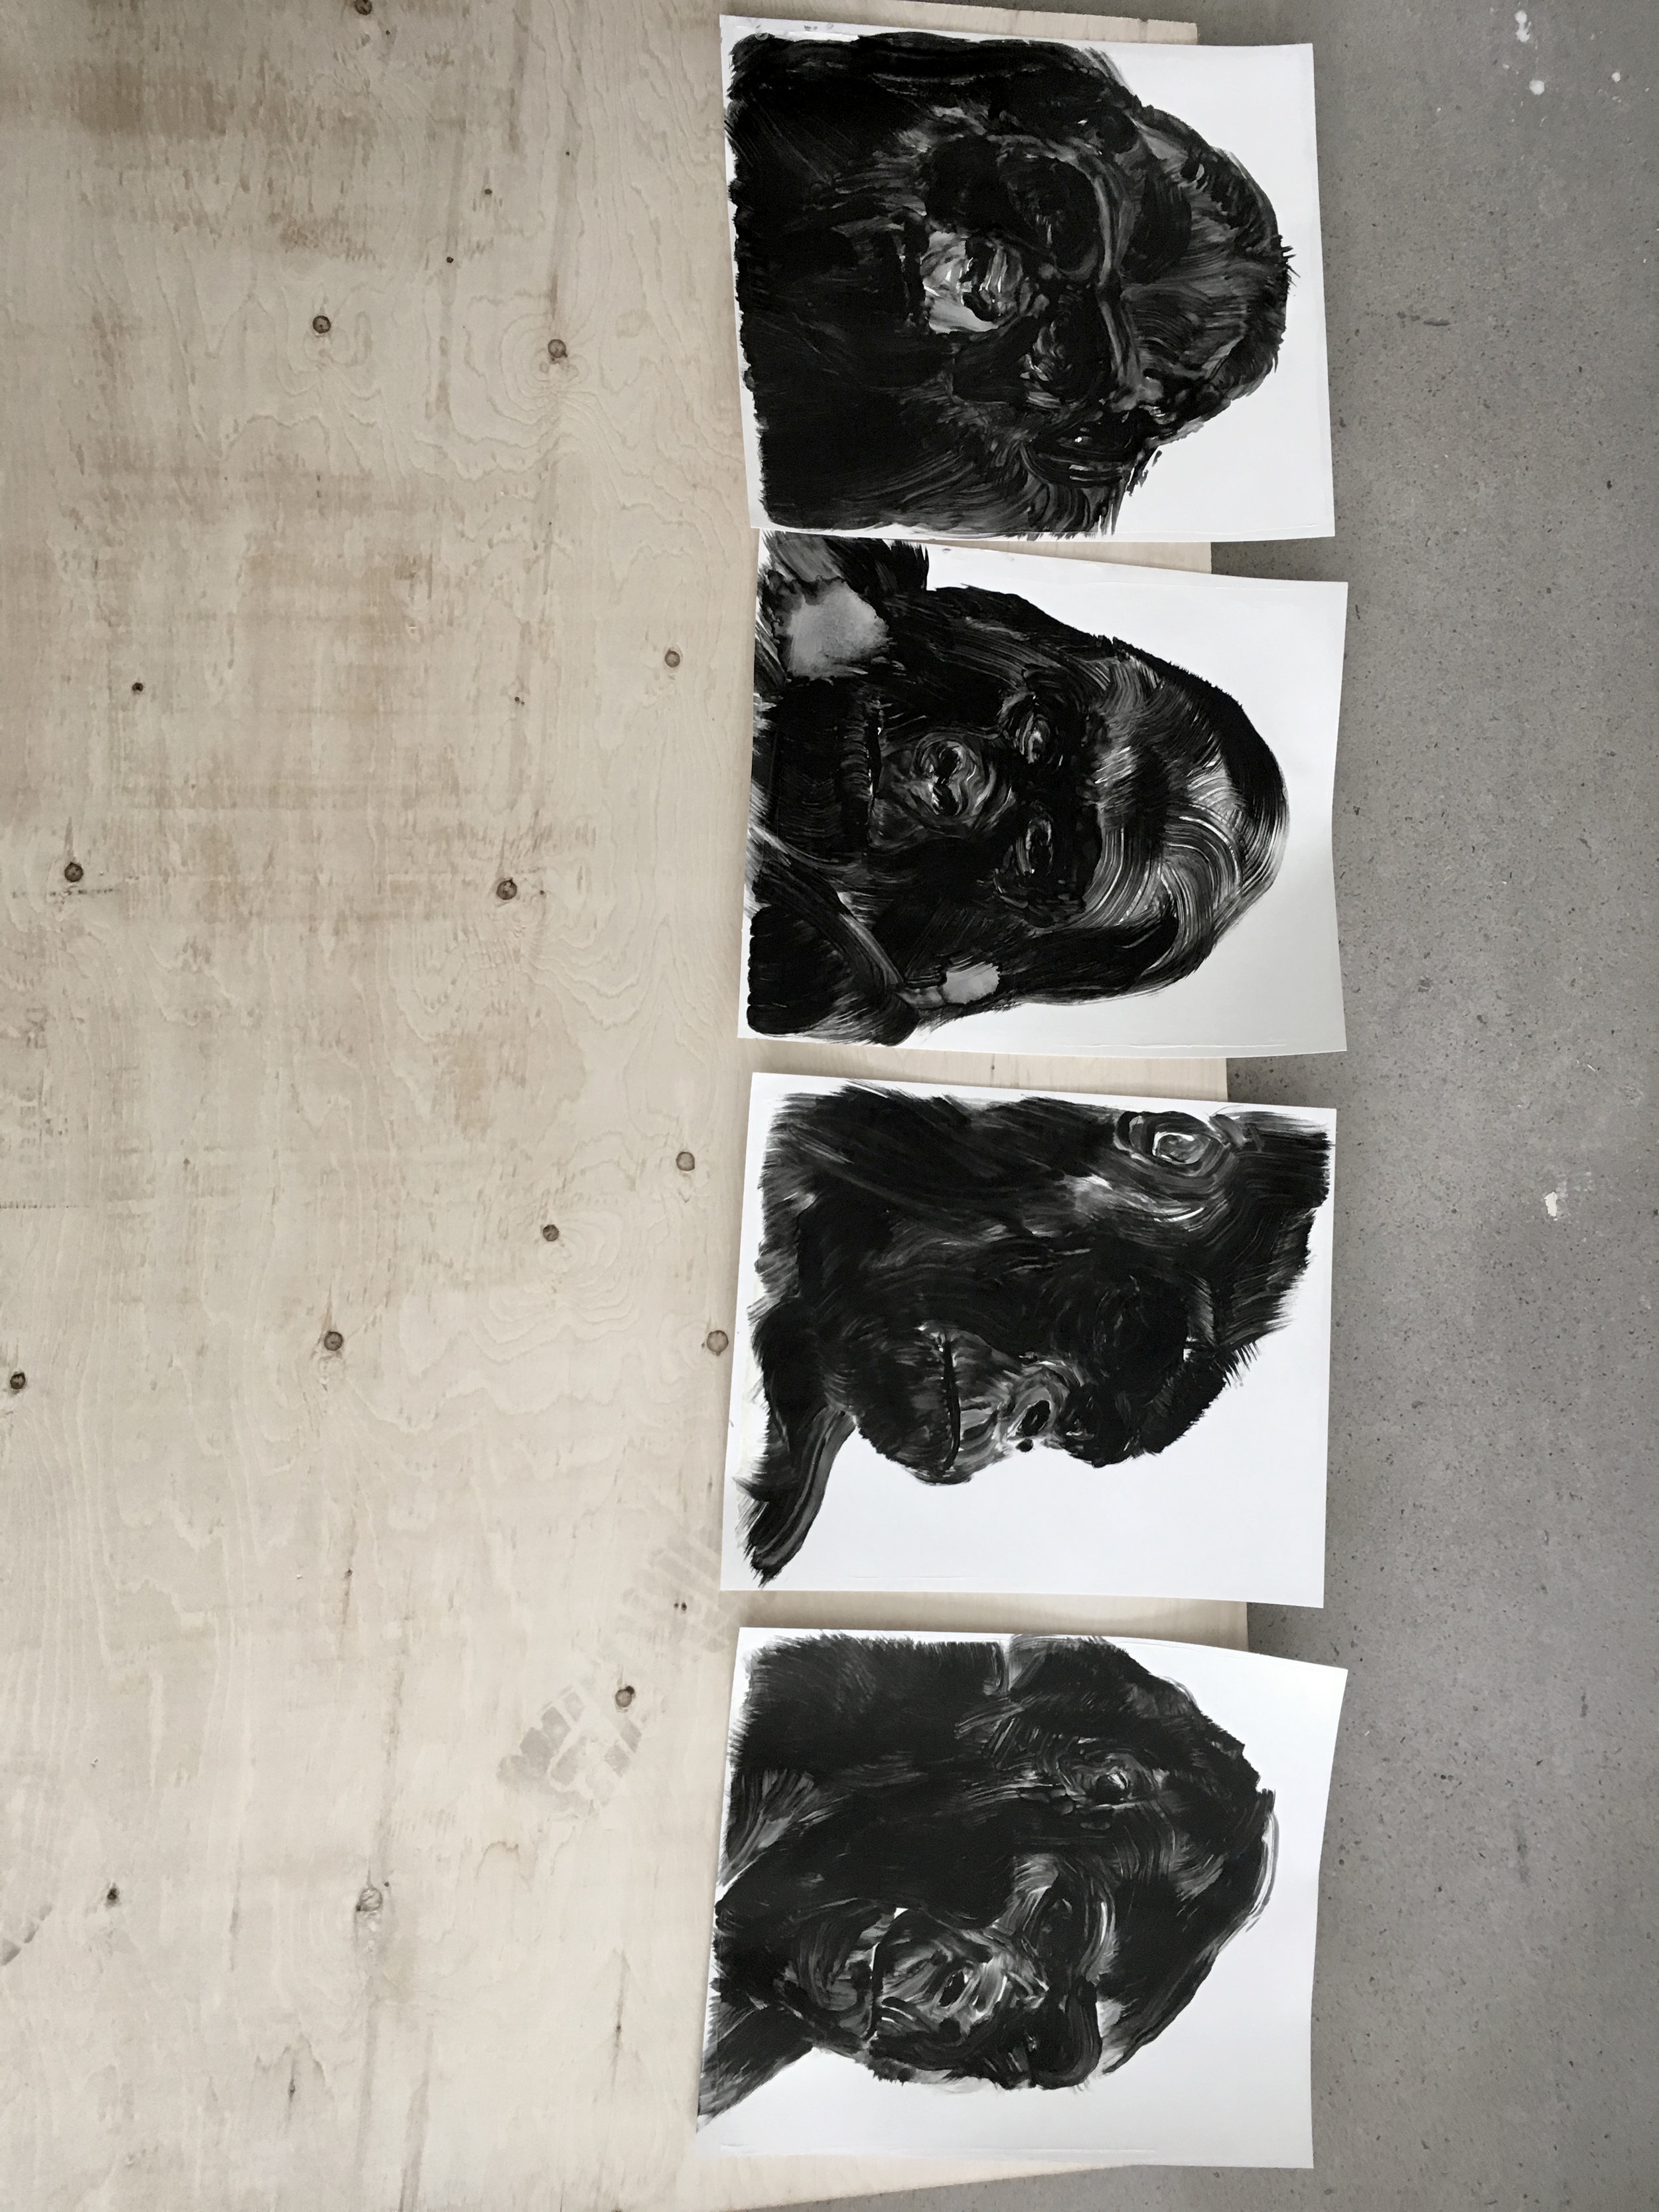  Portraits de gorilles  Études à l'huile sur papier    